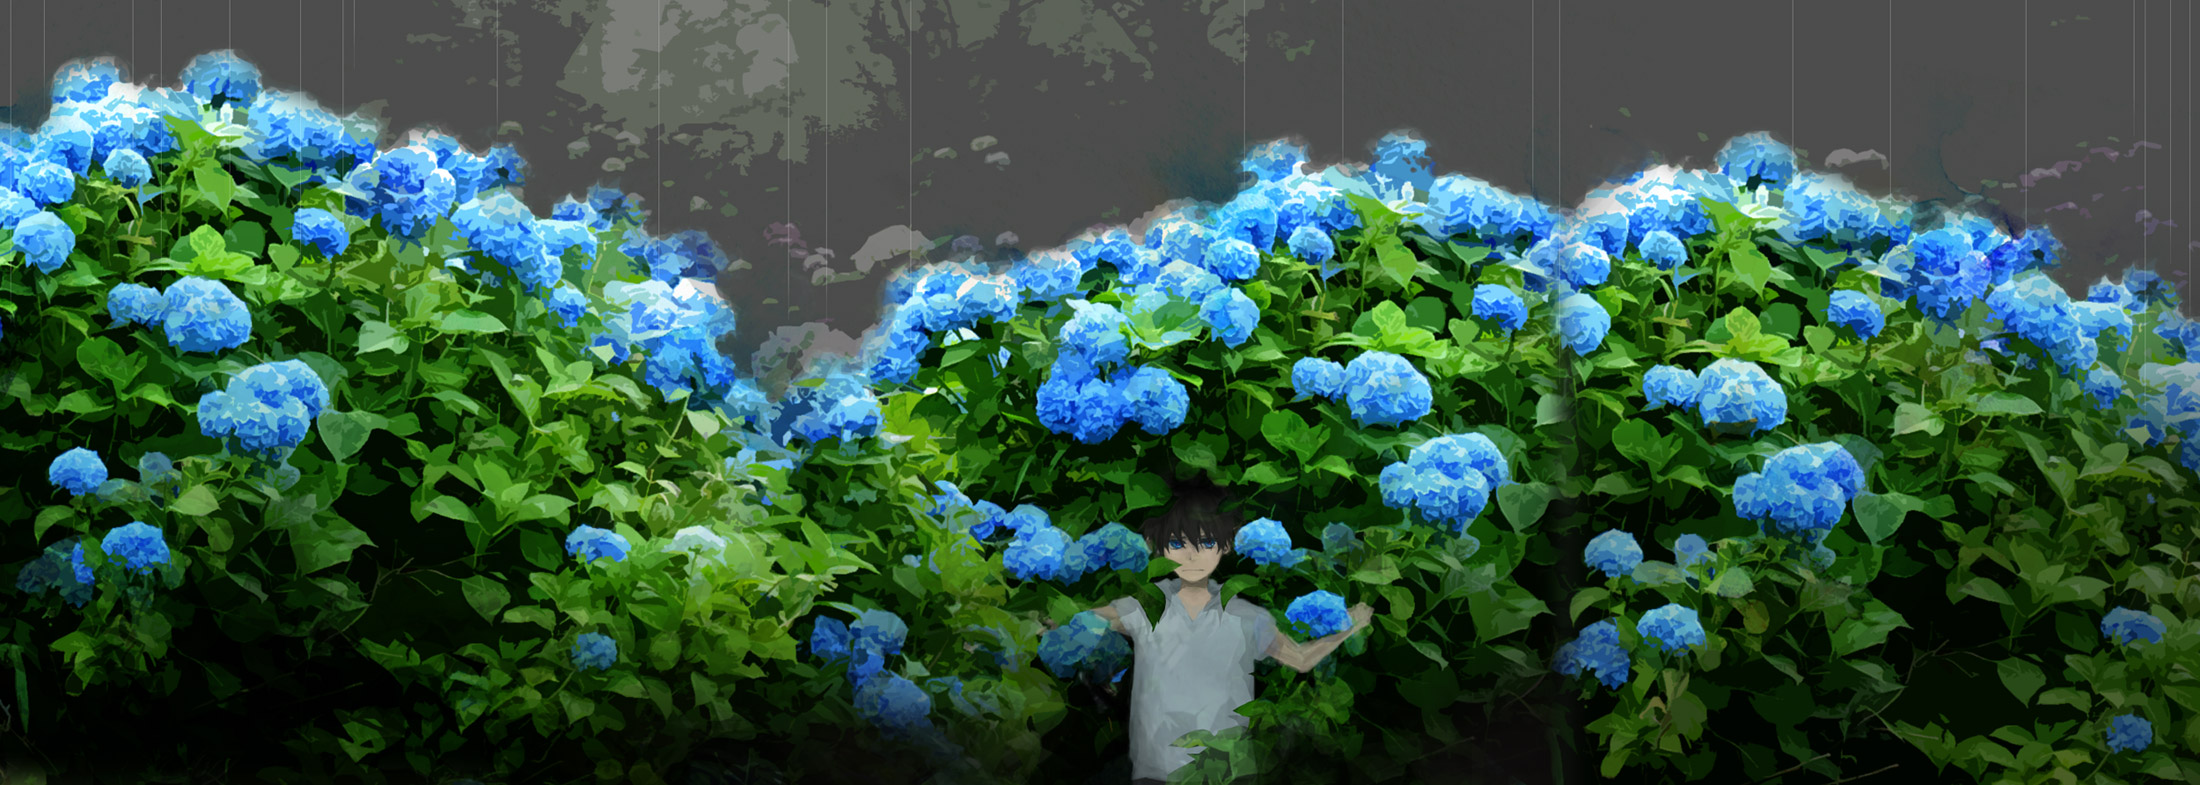 Hình ảnh hoa cẩm tú cầu Anime dễ thương